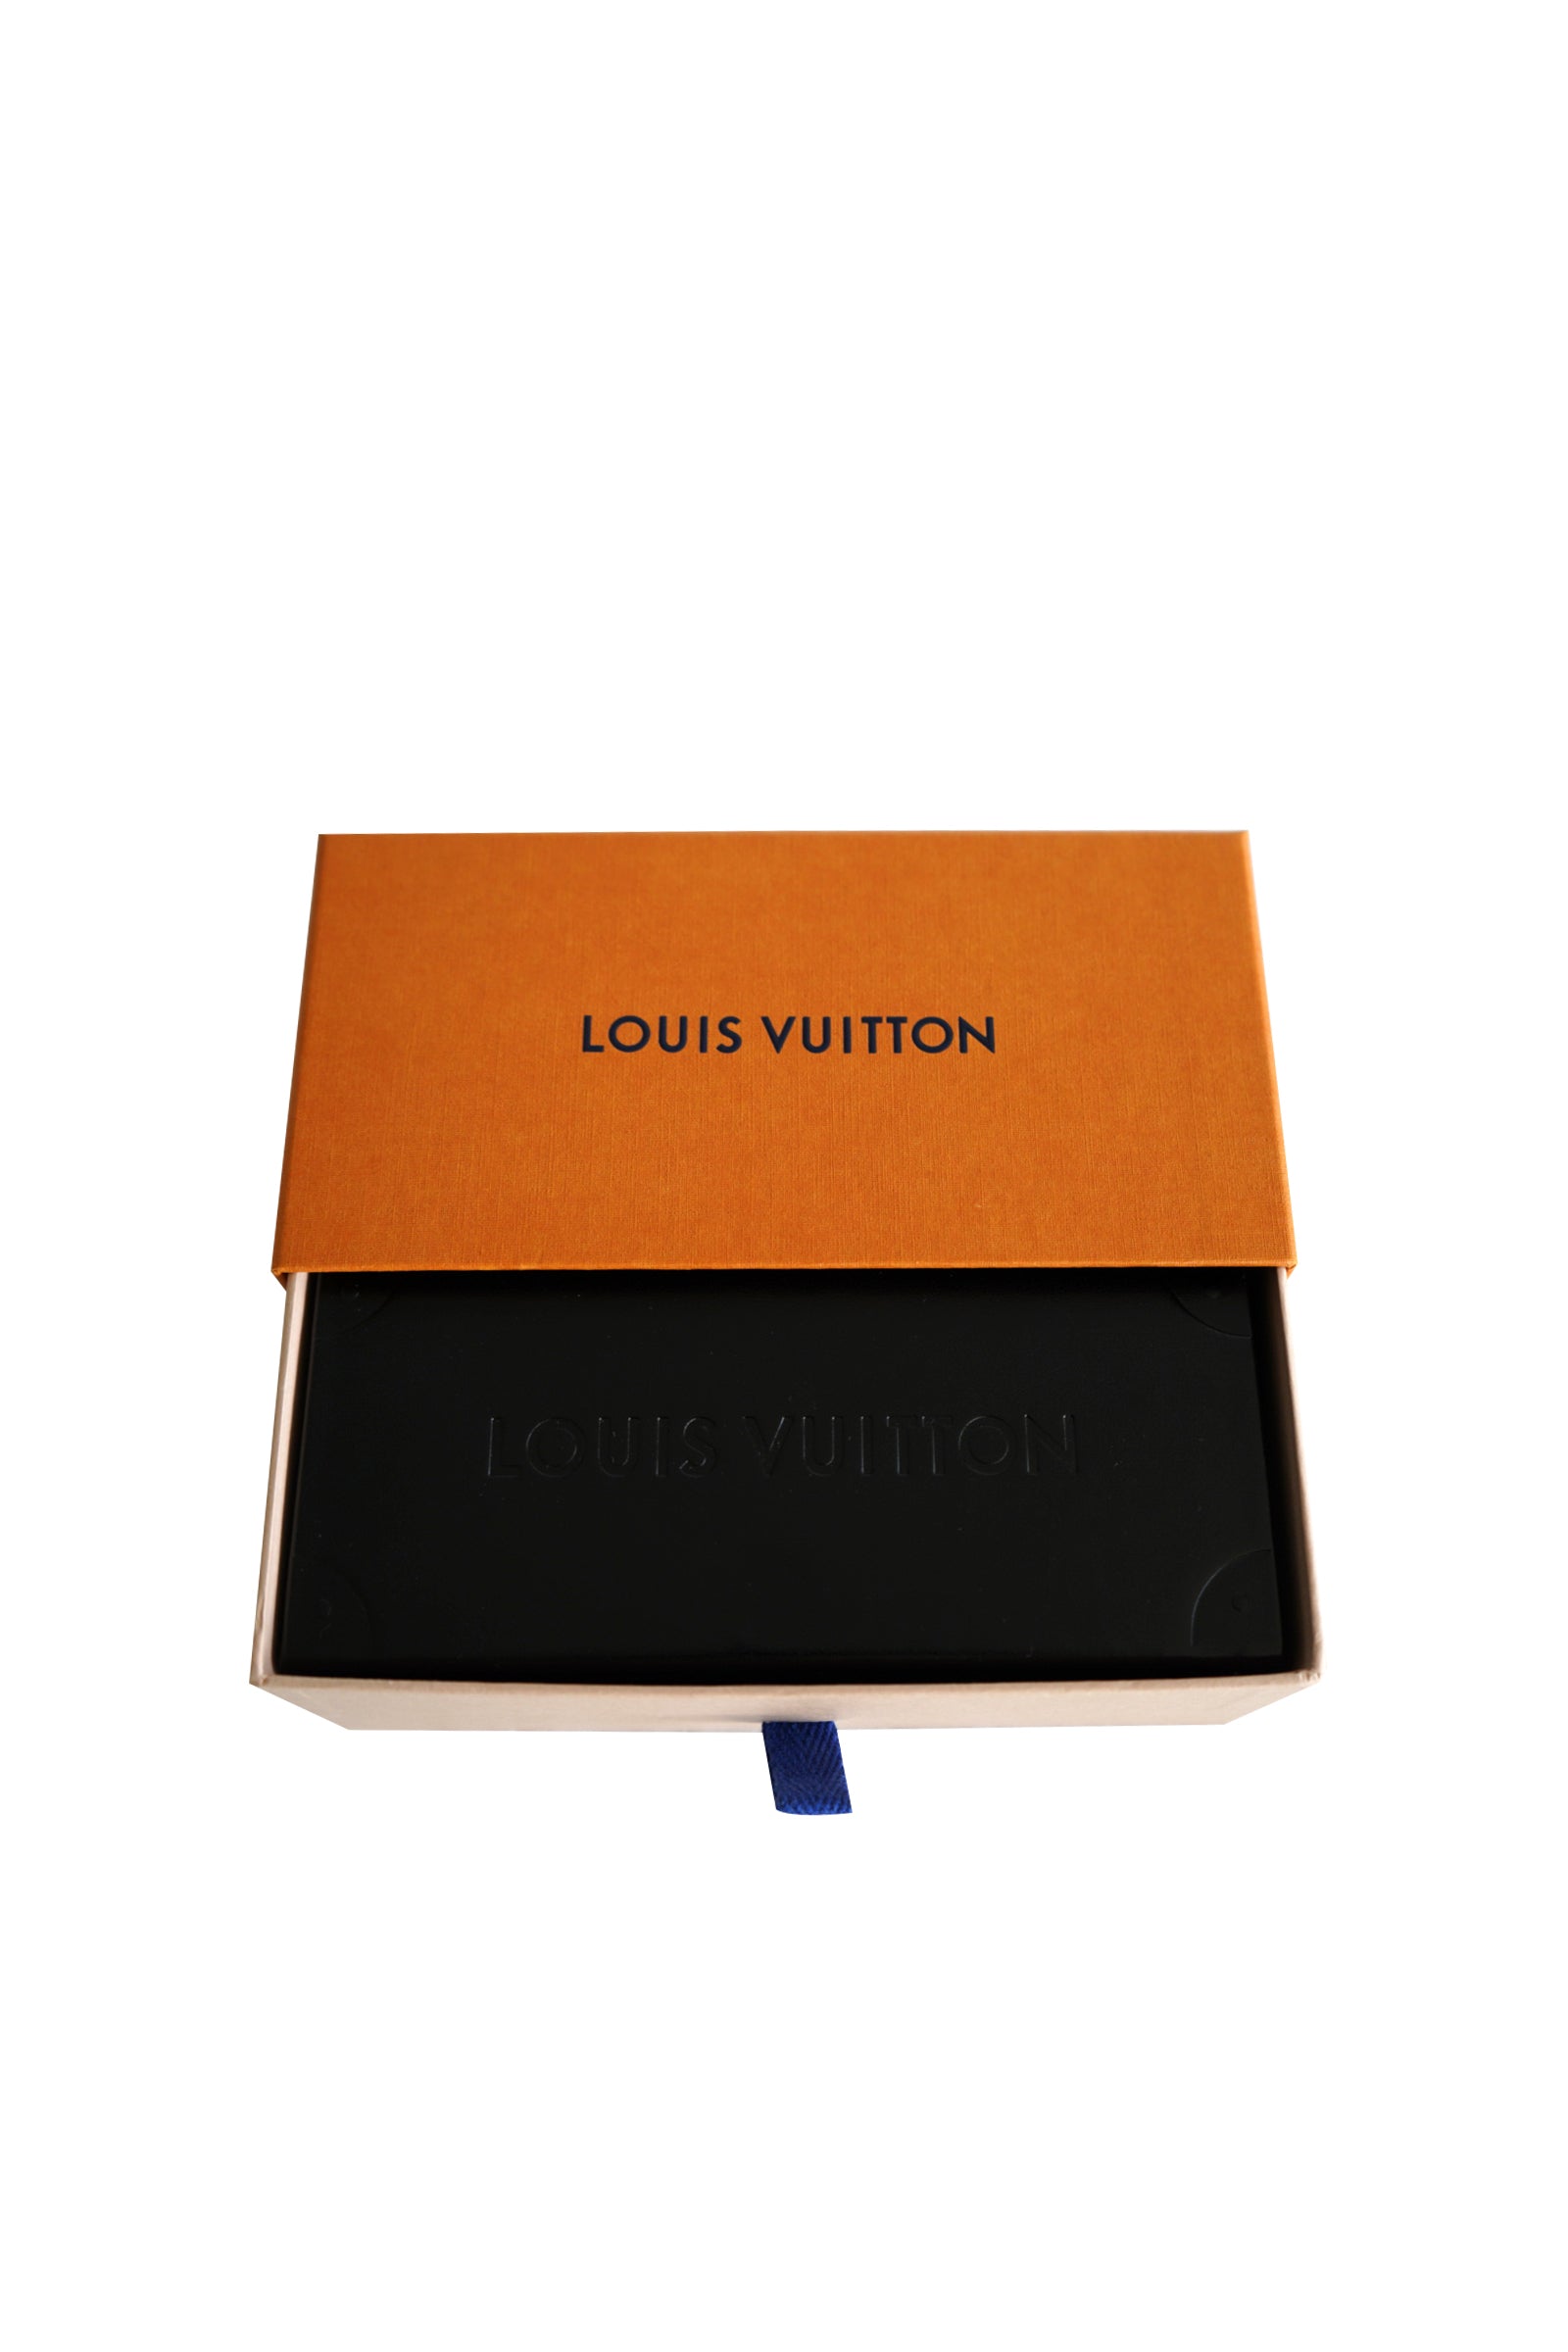 Louis Vuitton 1.1 MILLIONAIRES SUNGLASSES (Virgil Abloh collection) – Swaggys Closet